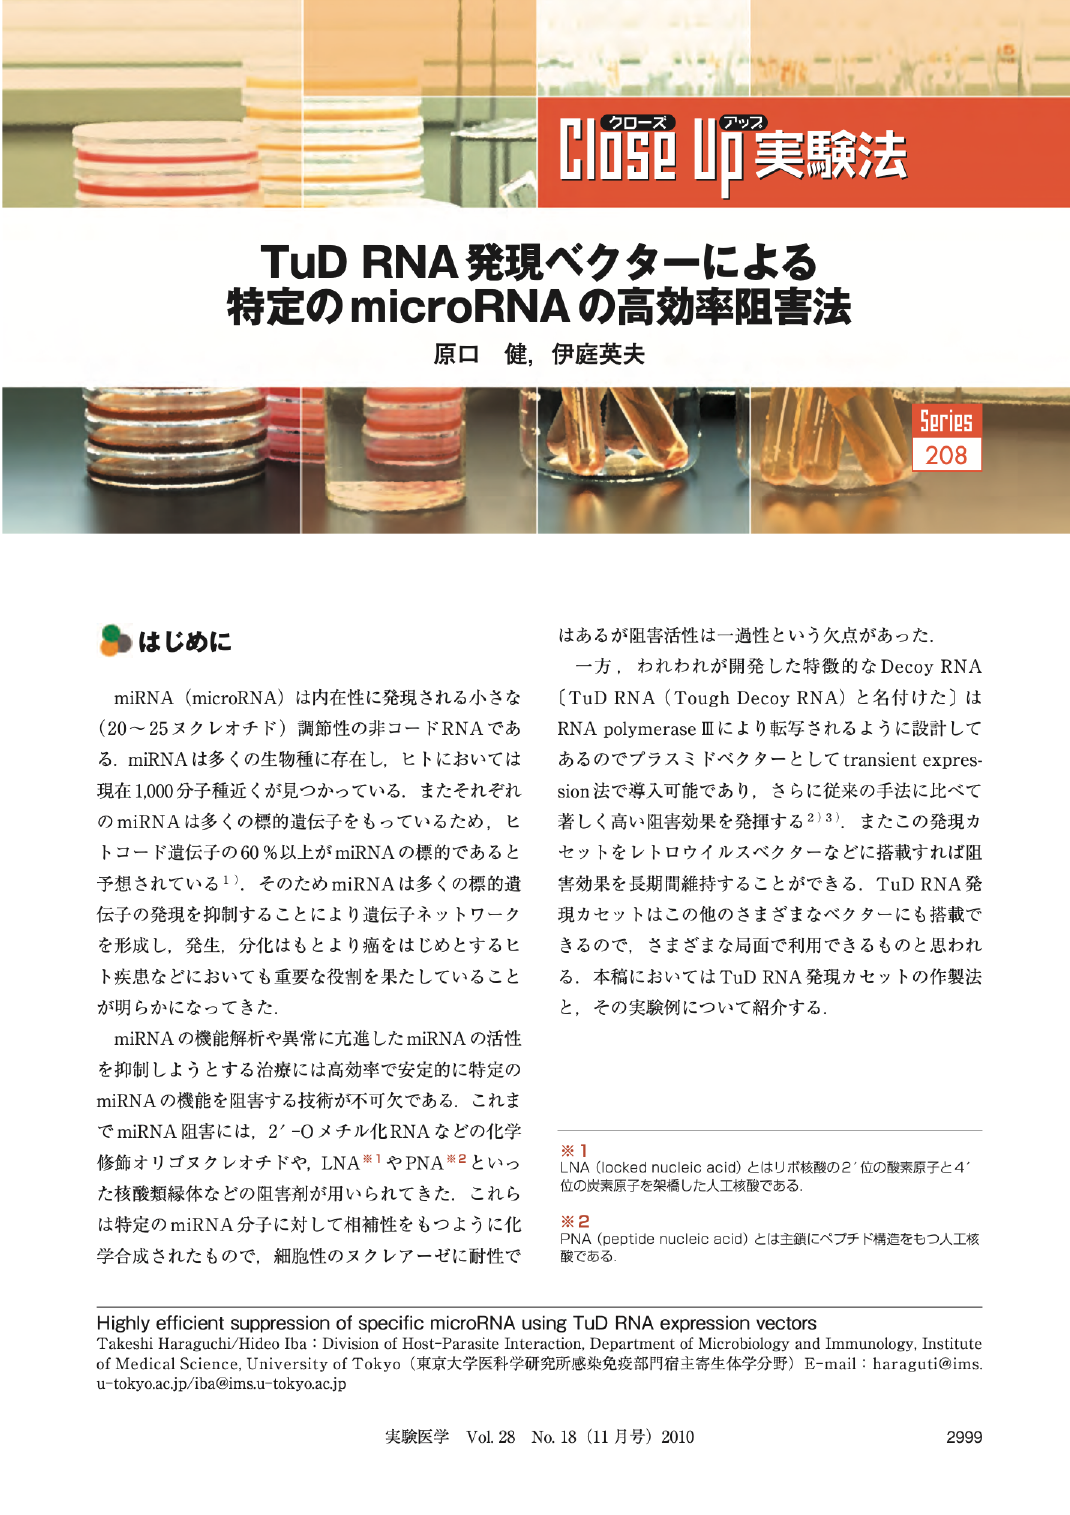 TuD RNA発現ベクターによる特定のmicroRNAの高効率阻害法